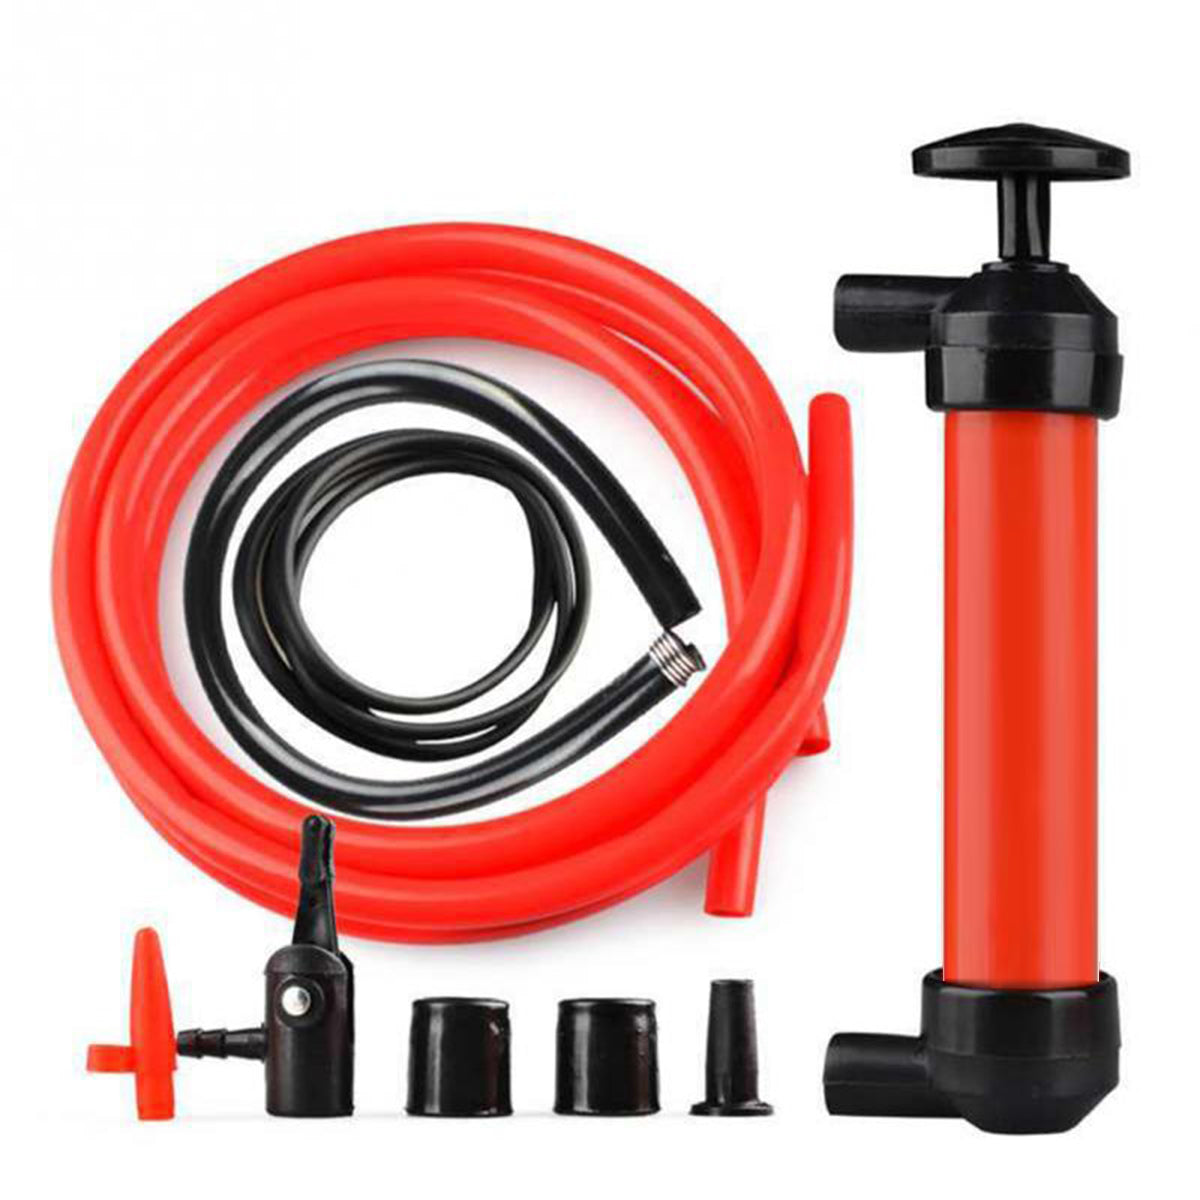 Orange Red Portable Manual Sucker Siphon Pump Transfer Oil Liquid Hand Air Pump Car